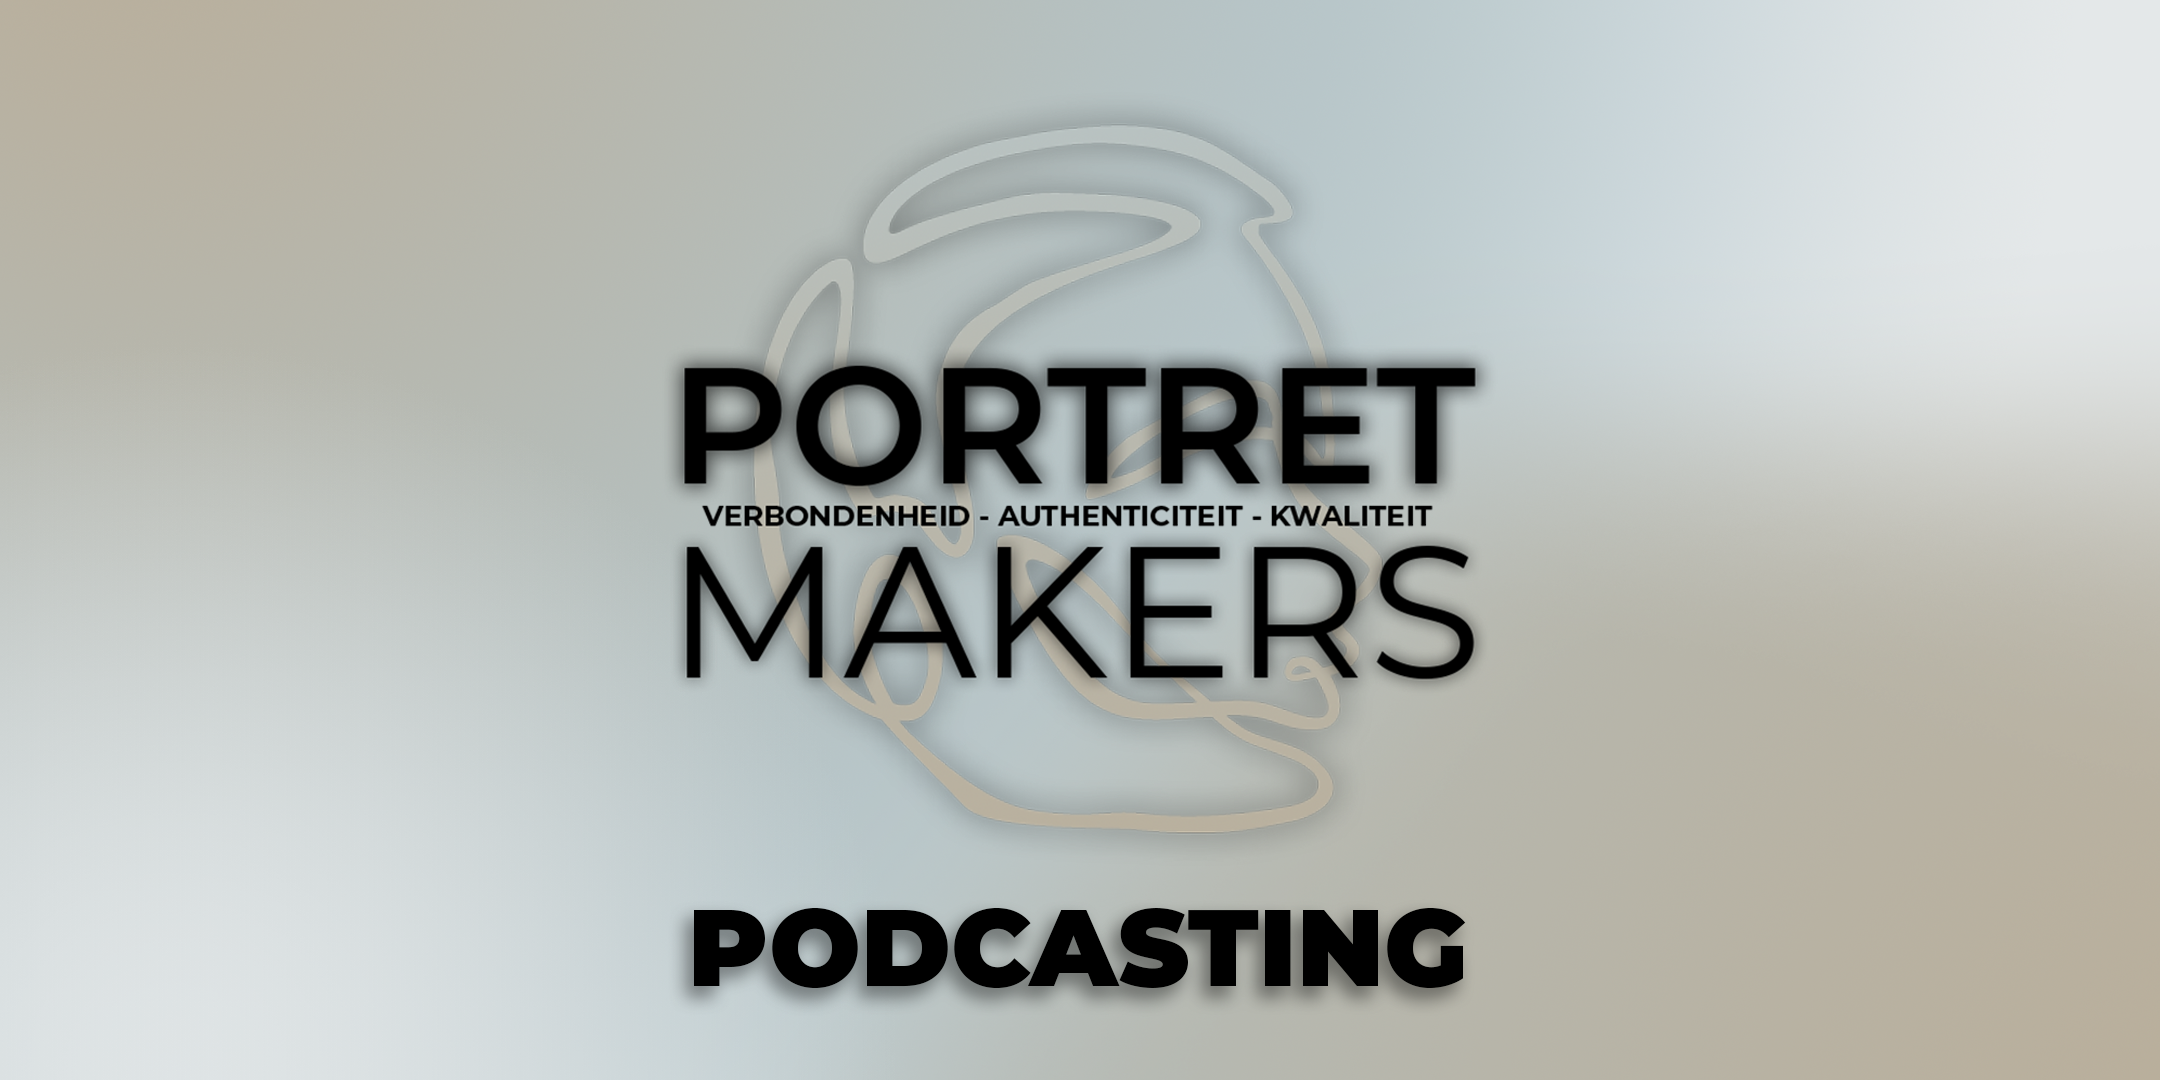 Waarom kiezen voor Portretmakers Podcasting